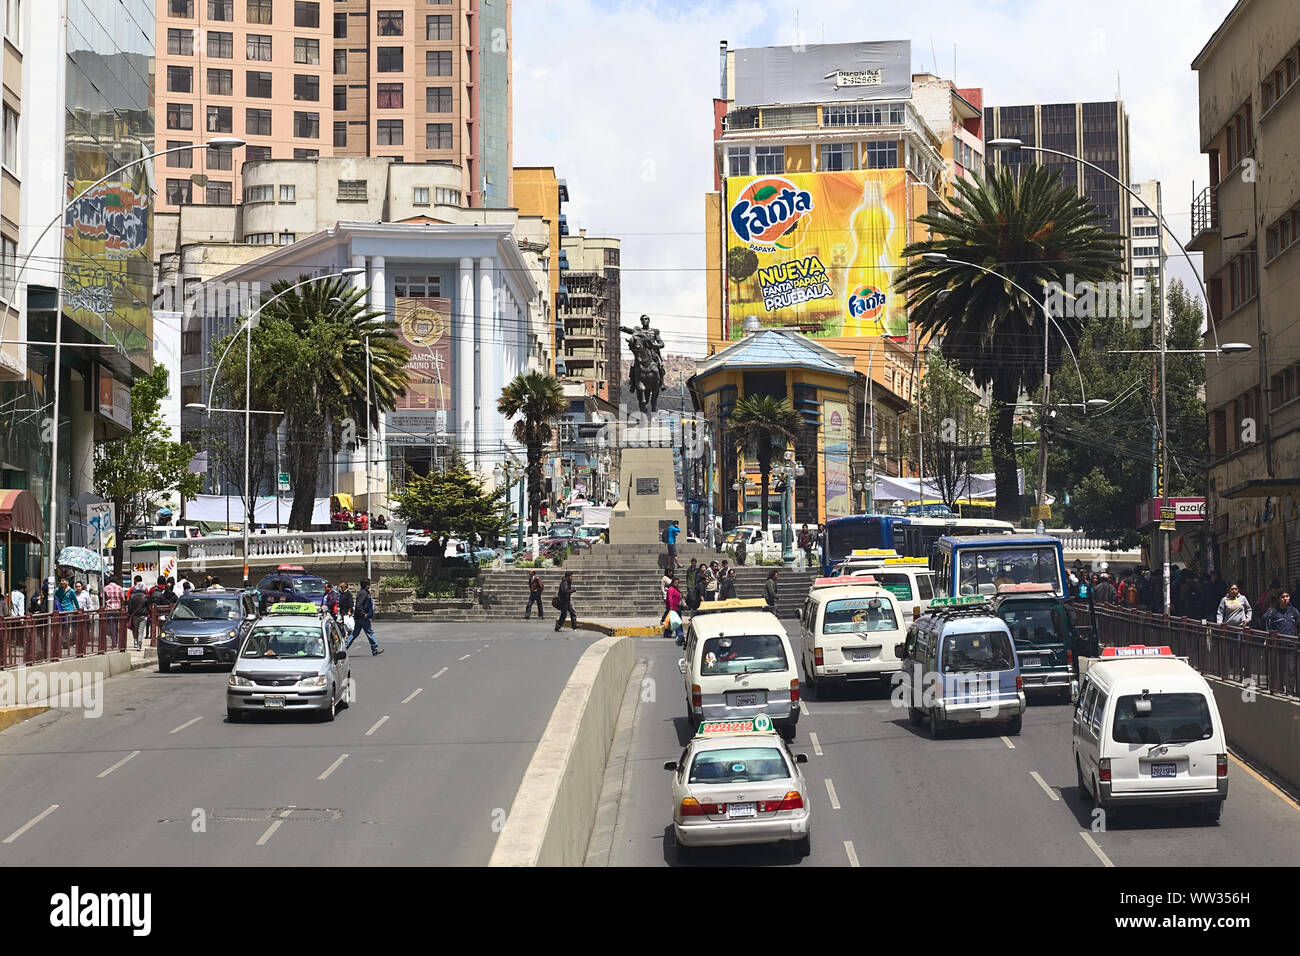 LA PAZ, BOLIVIA - NOVEMBER 28, 2014: Villazon Avenue leading to the statue of Mariscal Sucre standing on Plaza del Estudiante (Student's Square) Stock Photo